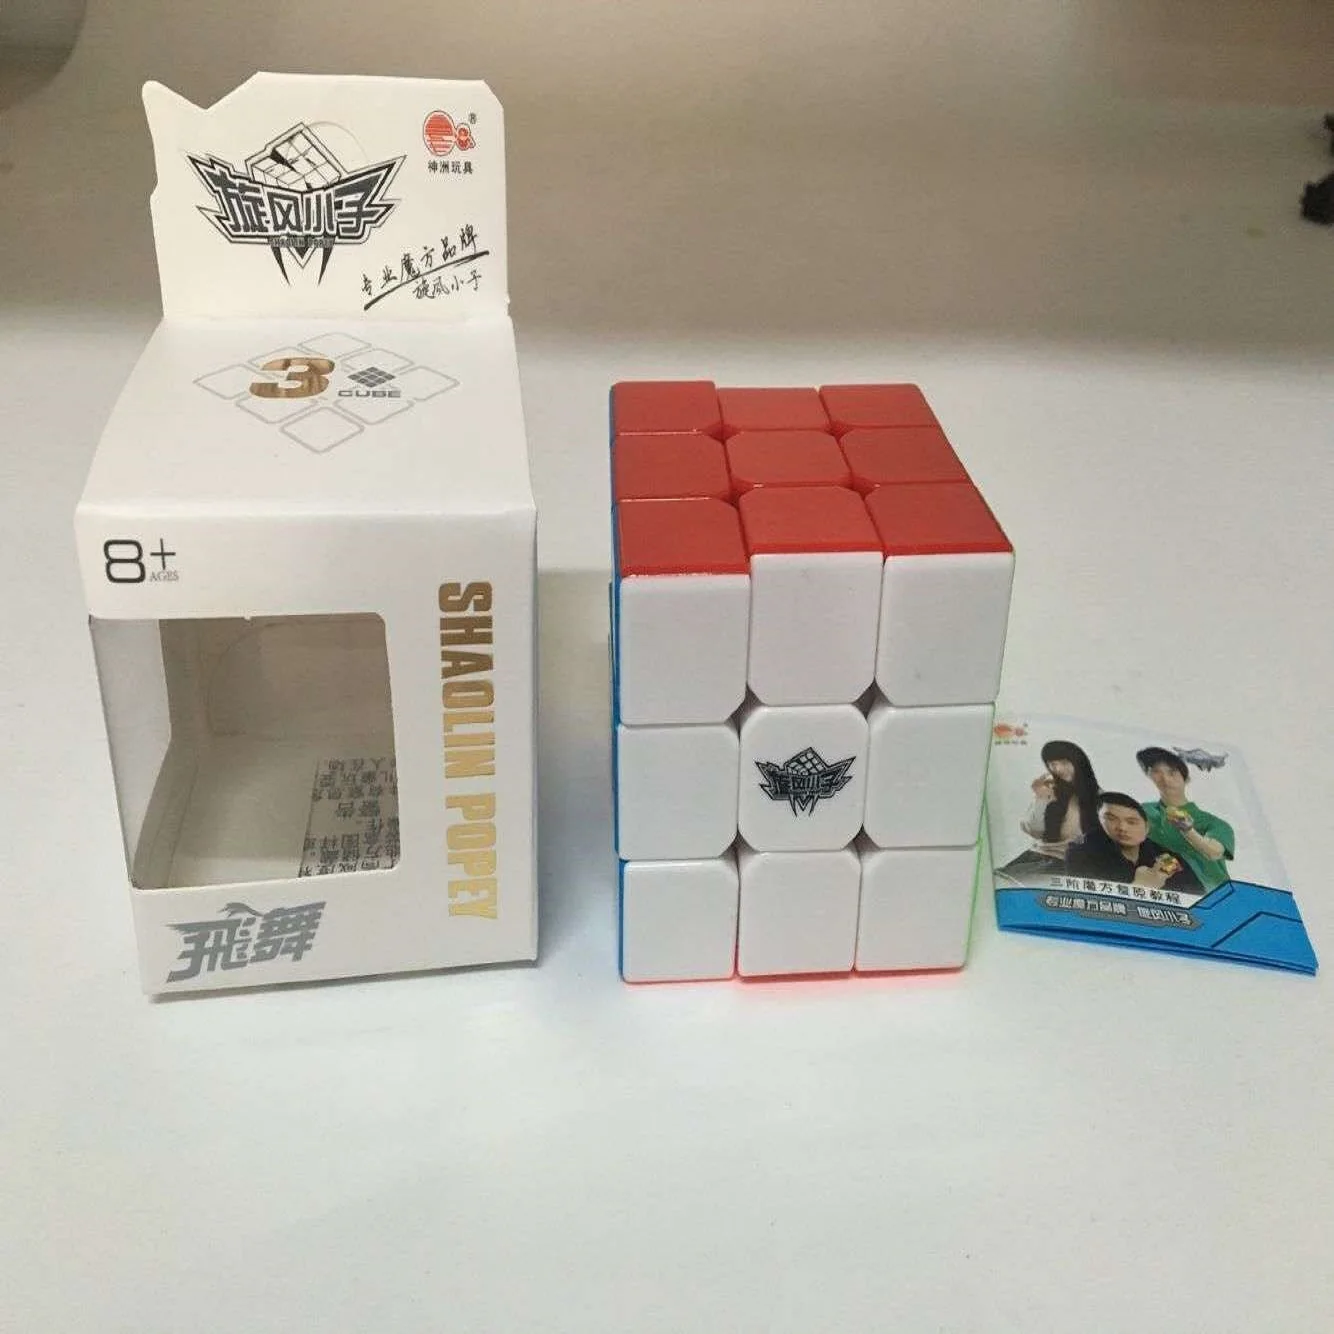 Циклон для мальчиков 3x3x3, волшебный куб, головоломка для соревнований, скоростная головоломка, нео-куб, игрушки для детей, Магика, без наклеек, Радуга